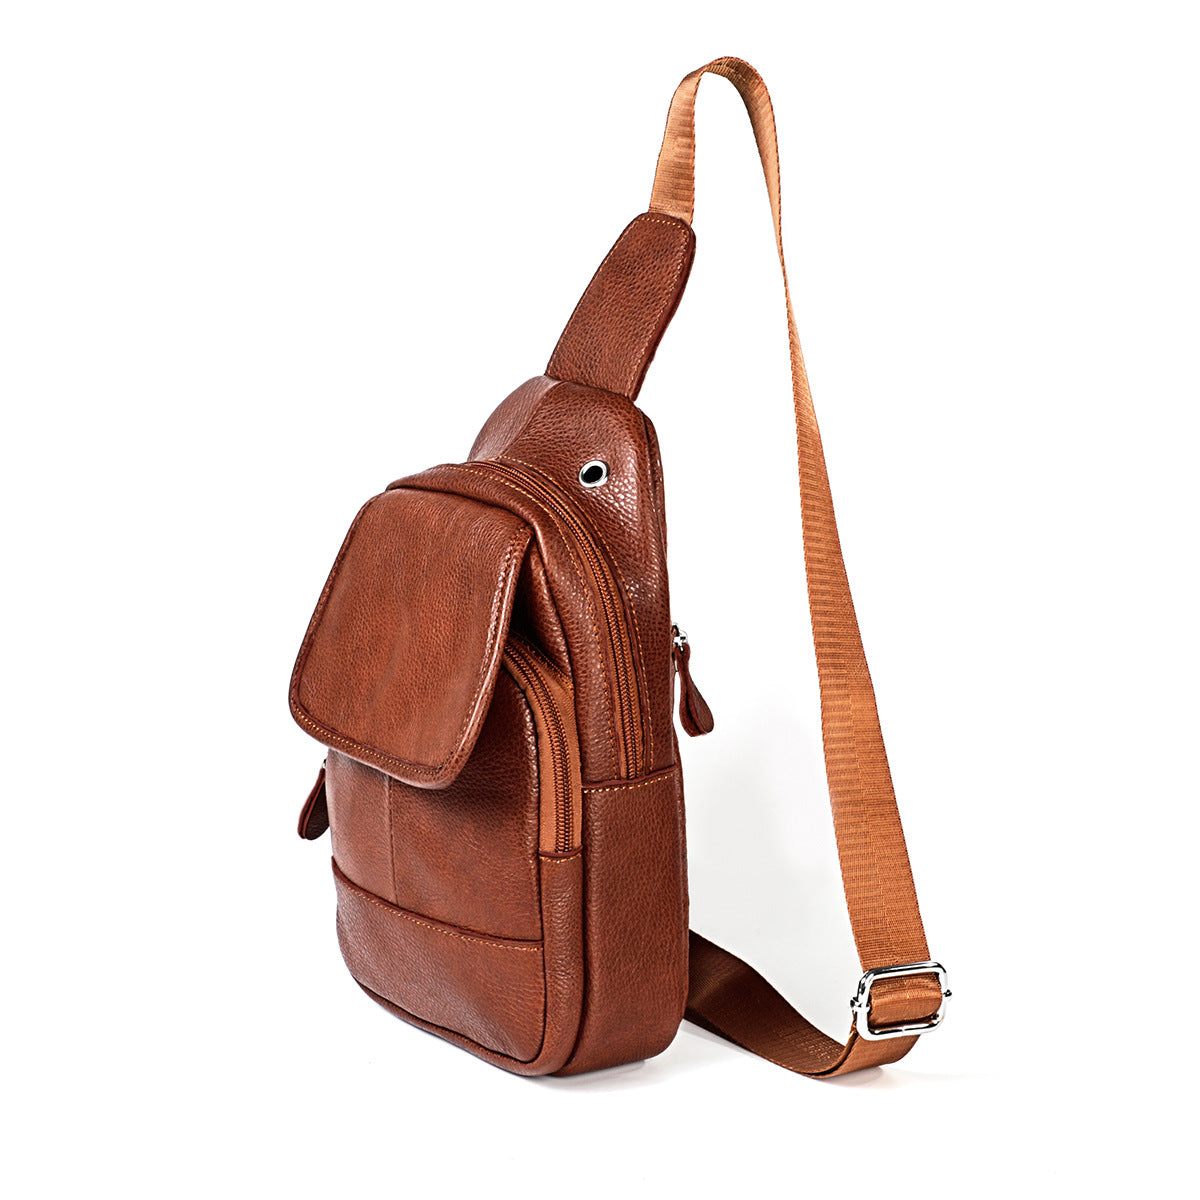 Genuine Leather Sling Backpack - Multipurpose Travel Chest Crossbody Bag